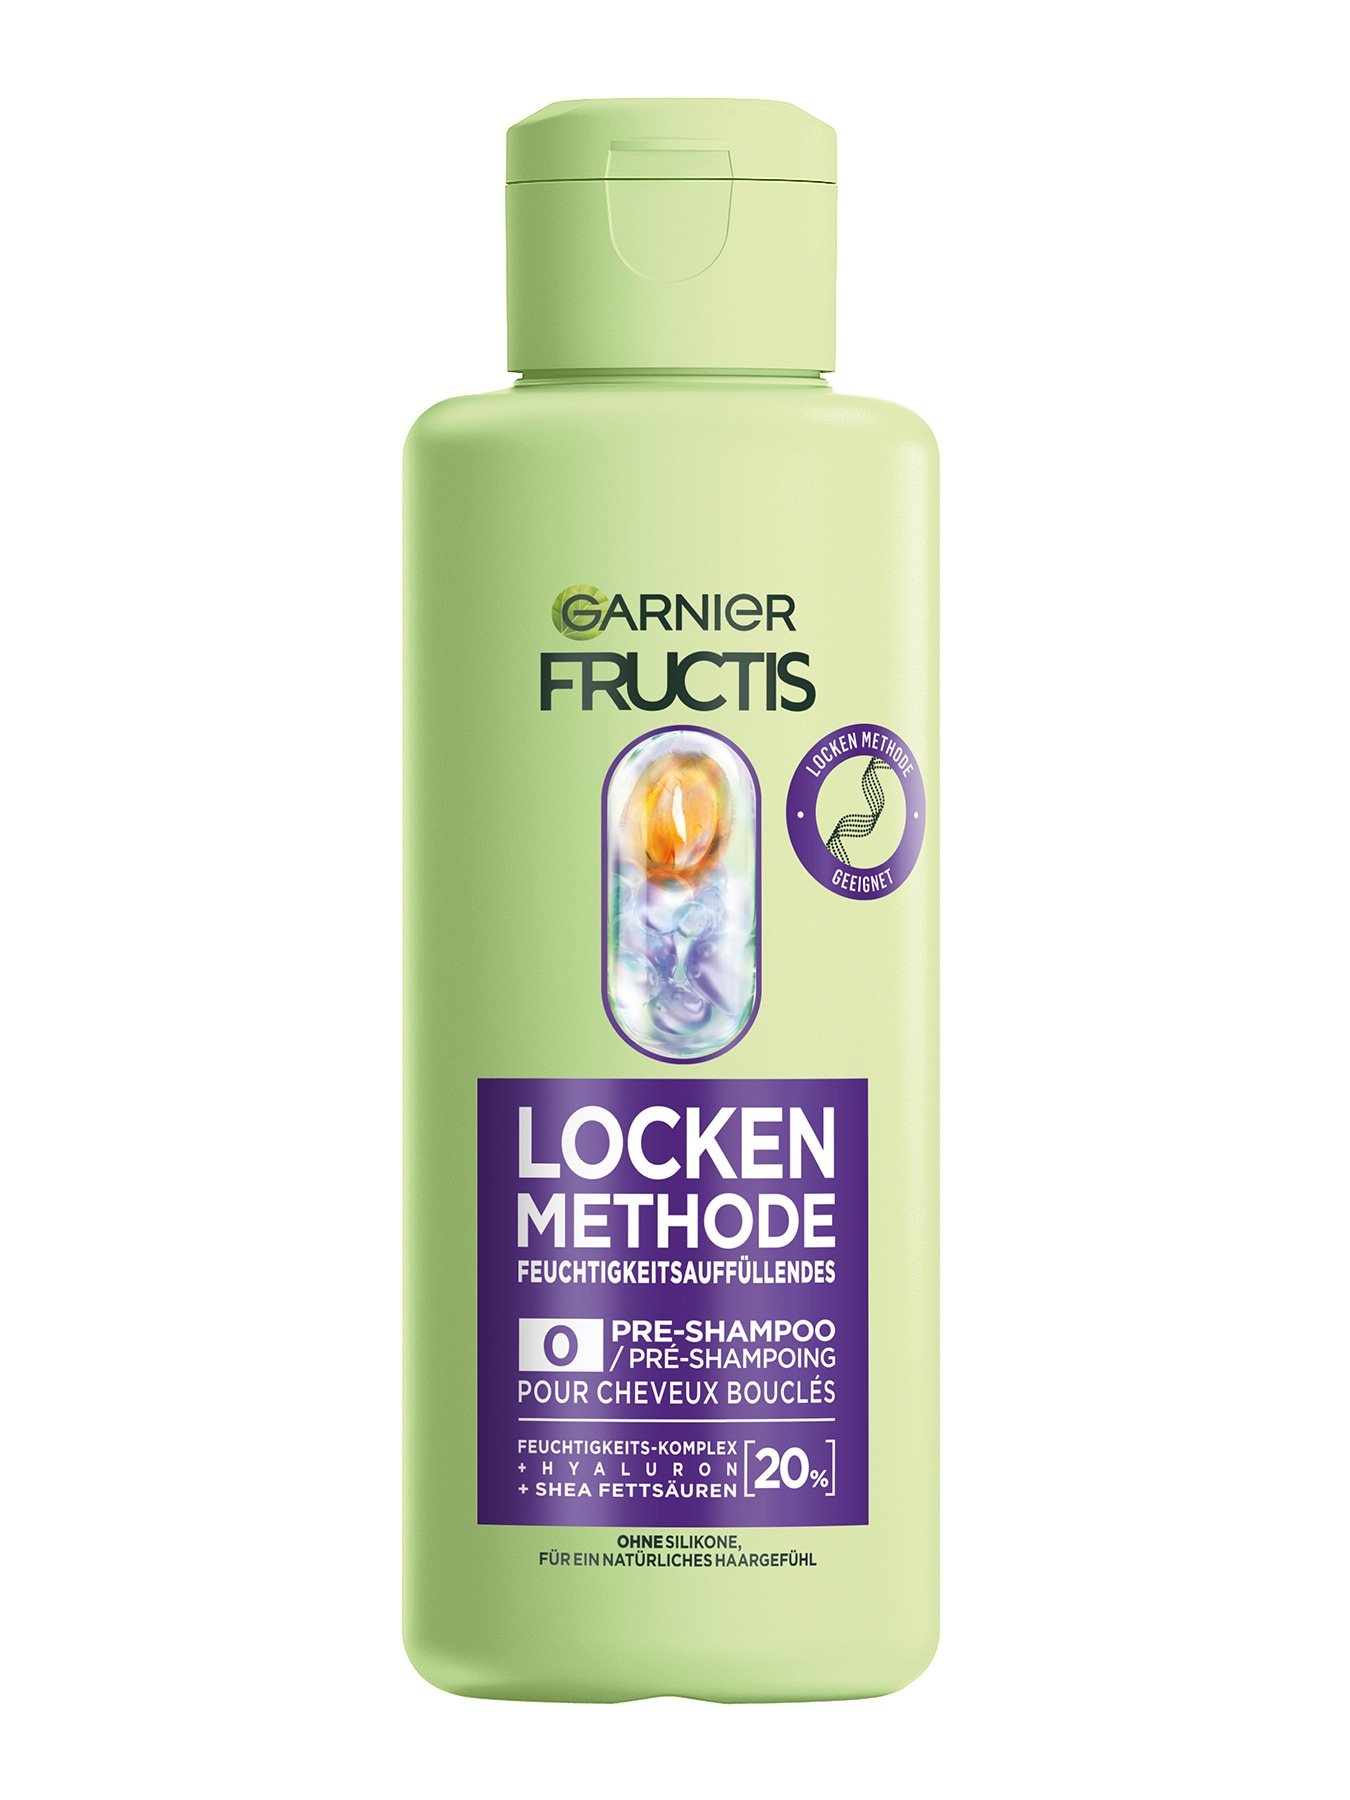 Fructis Locken Methode Feuchtigkeitsauffüllendes Pre-Shampoo Produktbild